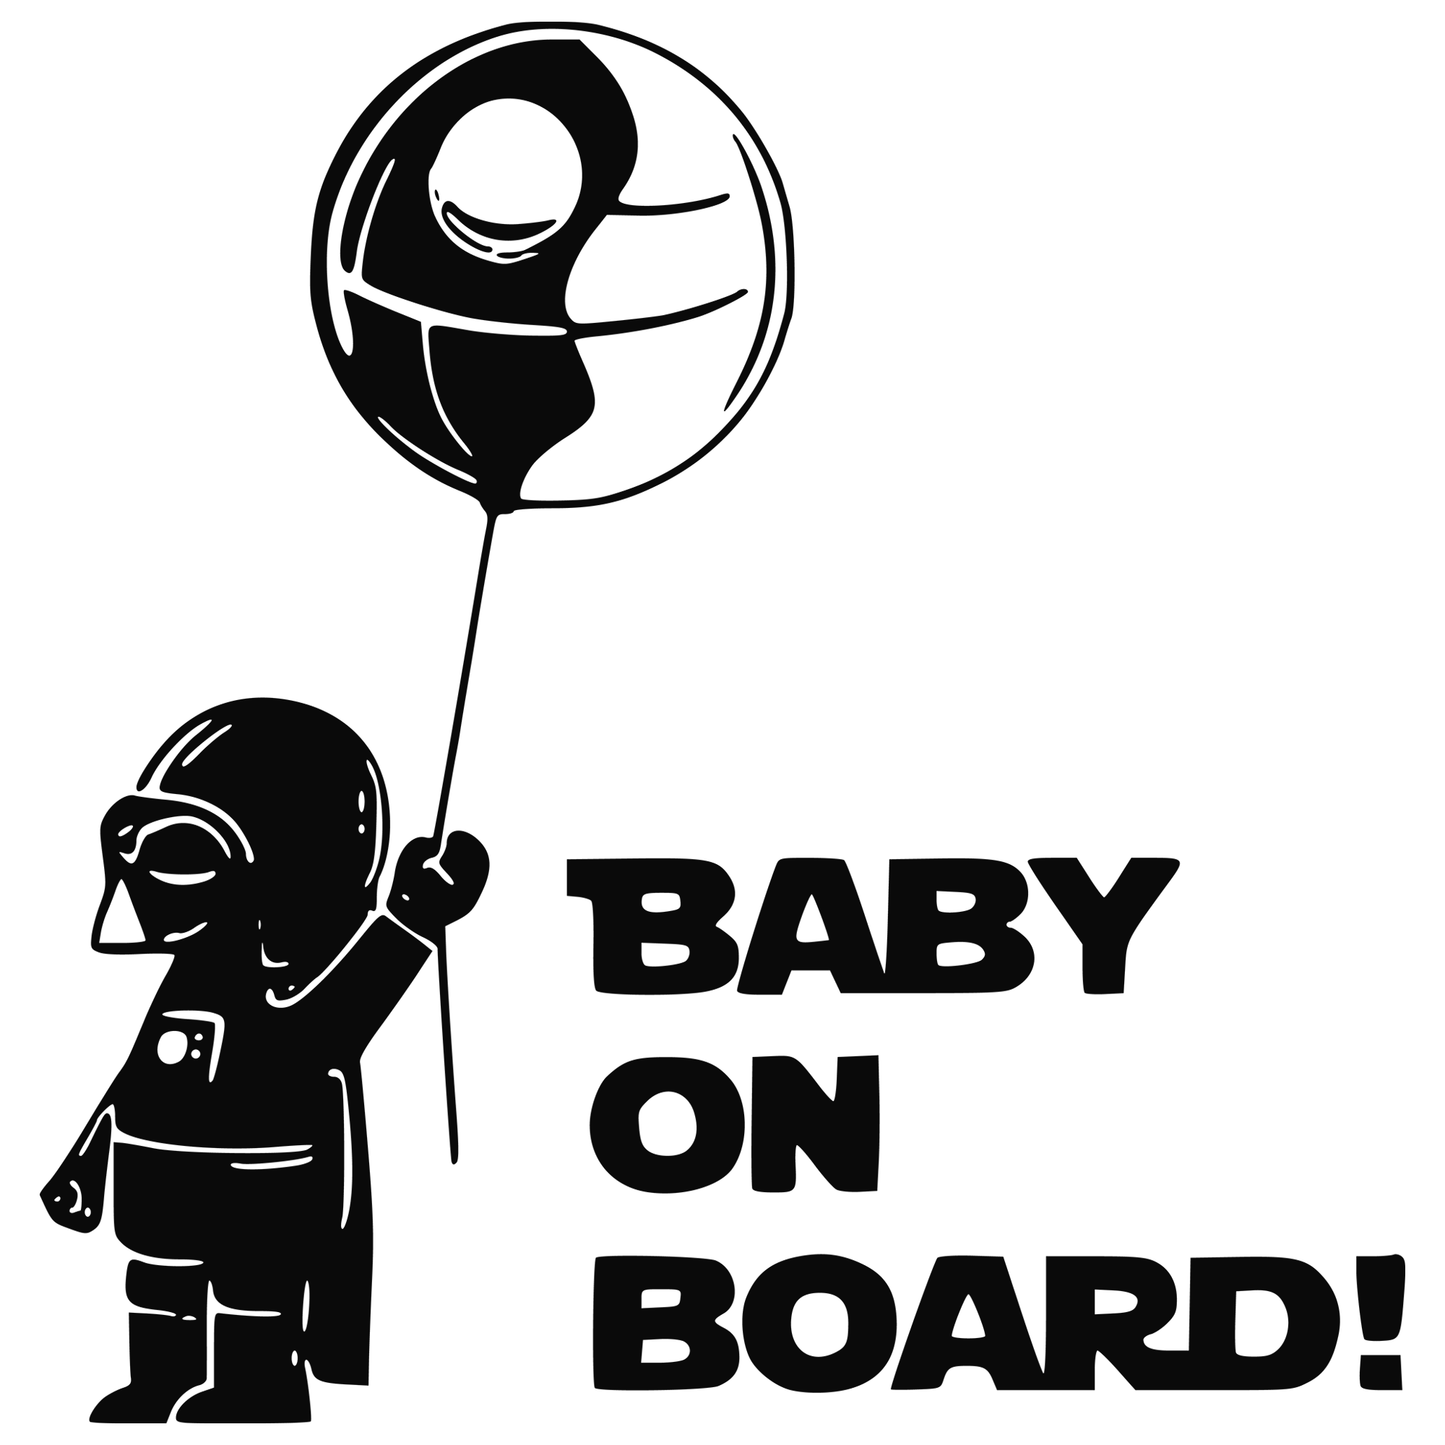 Darth Vader Baby on Board Death Star Balloon Vinyl Decal Sticker